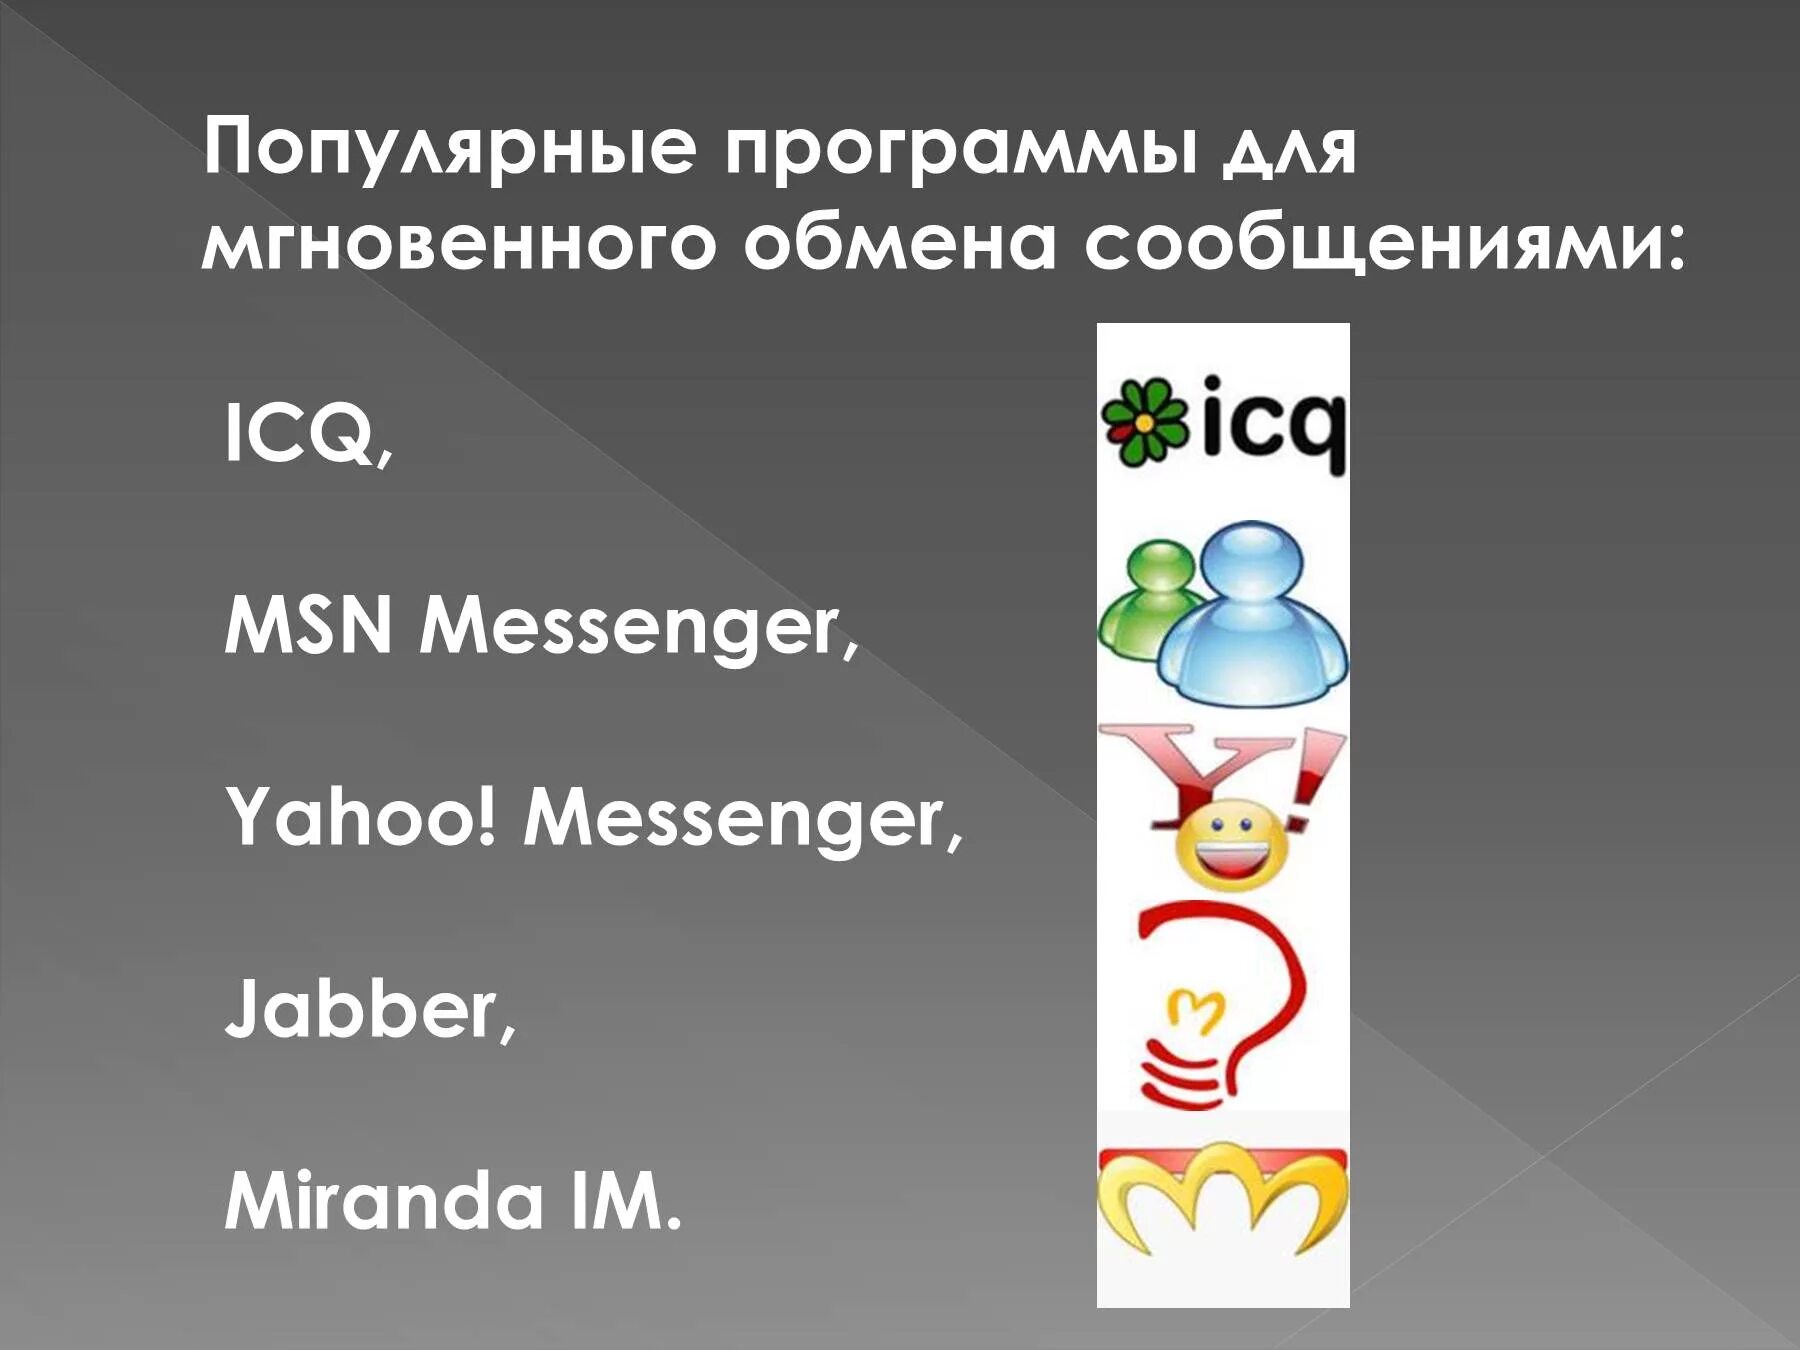 Миранда ICQ. ICQ программы мгновенного обмена сообщениями. Miranda мессенджер. Jabber мессенджер. Программа для мгновенного обмена сообщениями через интернет